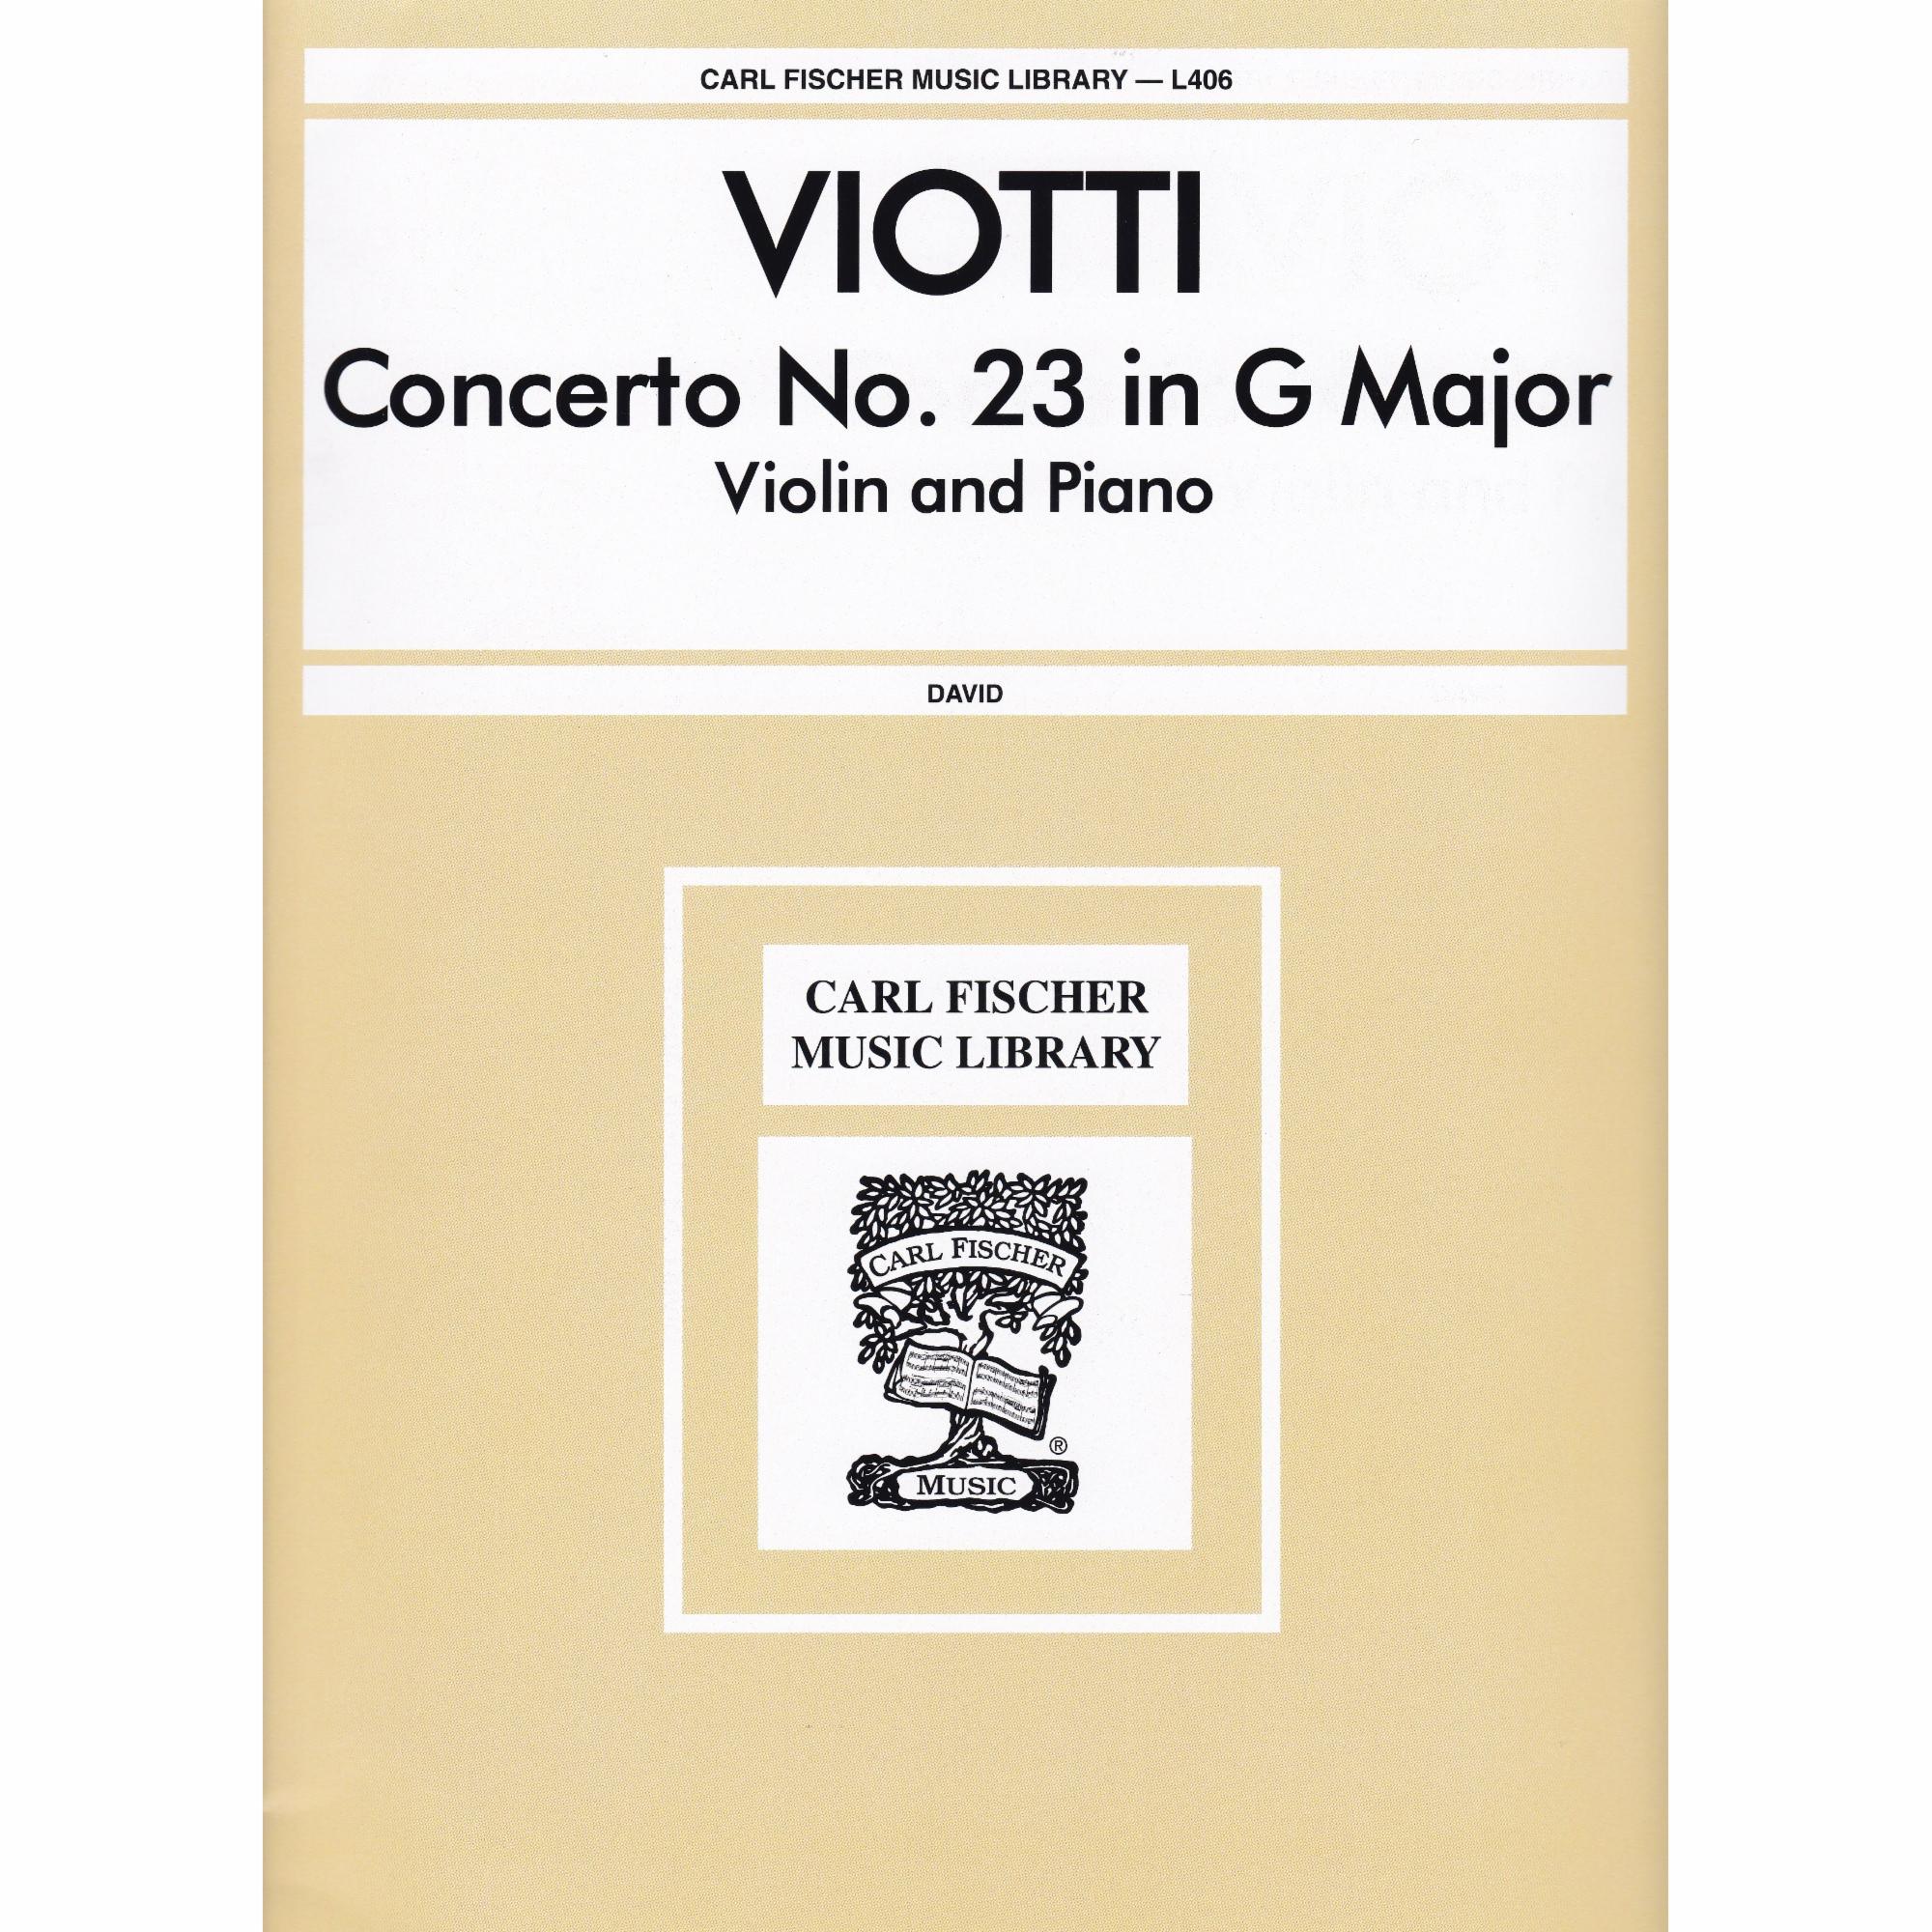 Violin Concerto No. 23 in G Major